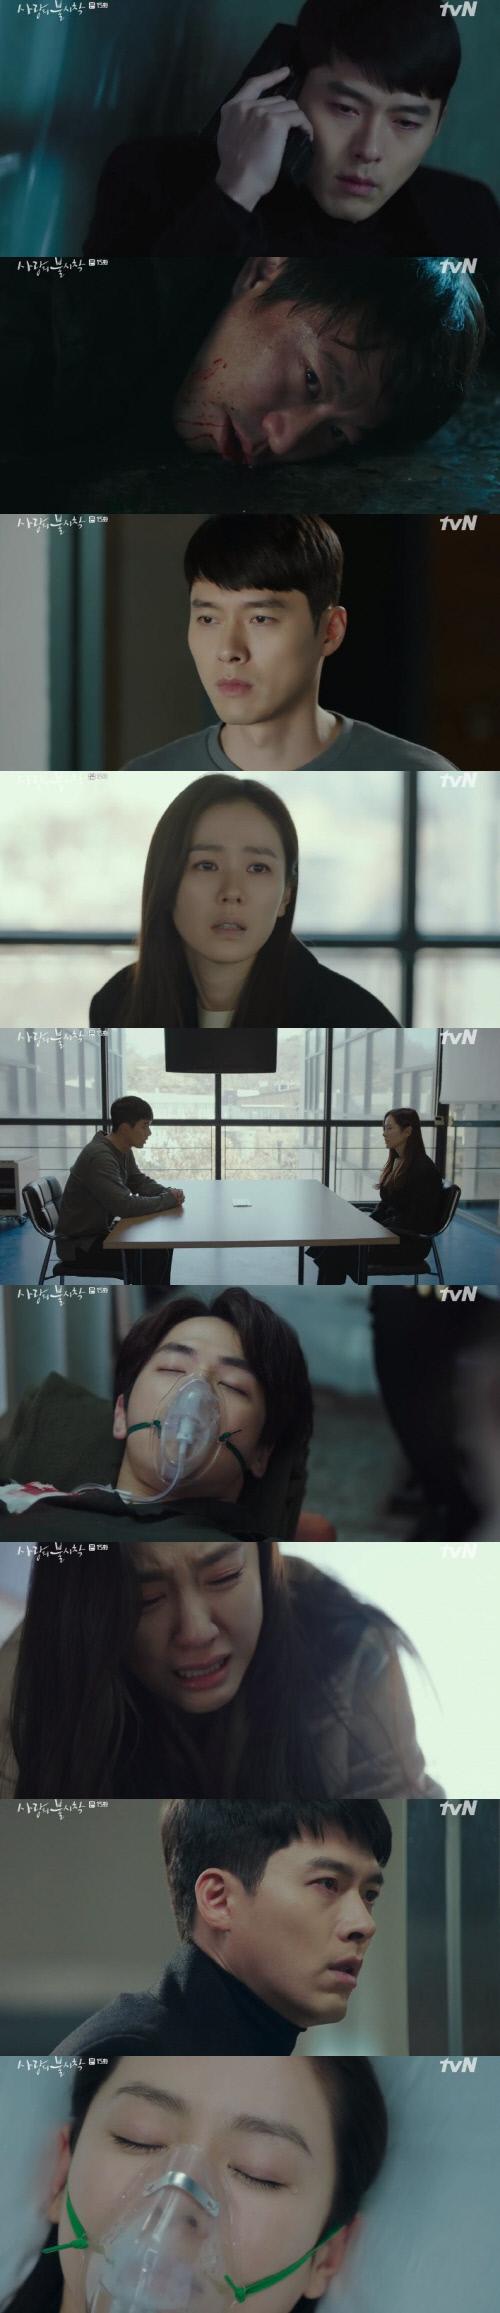 200216 -(2) tvN 토일드라마 [사랑의 불시착] 반전의 연속... 끝까지 눈 뗄 수 없는 전개